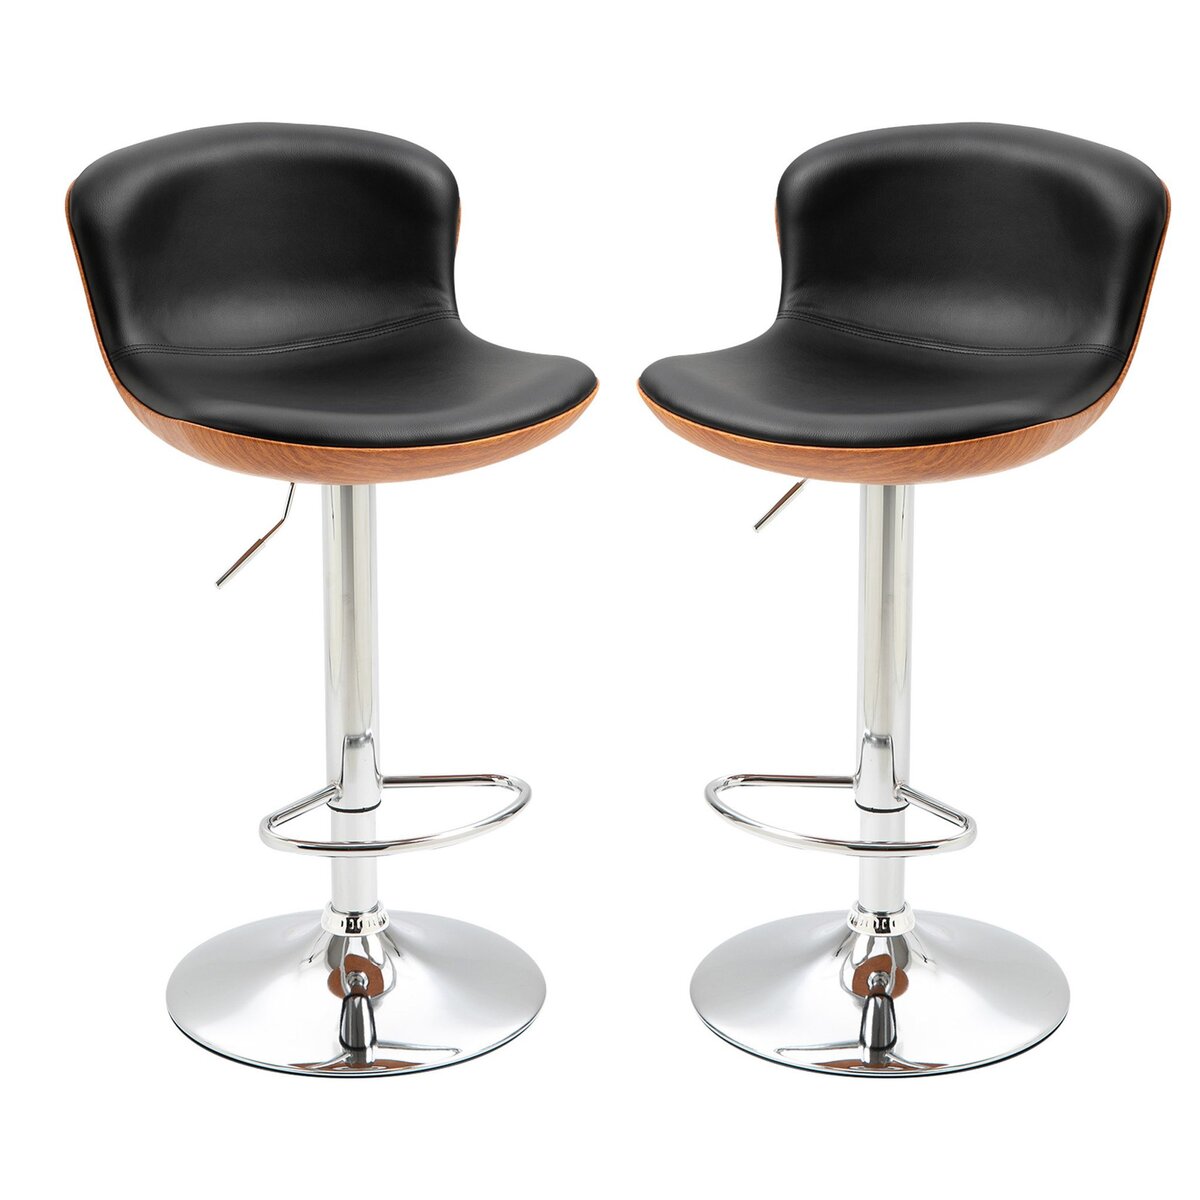 HOMCOM Lot de 2 tabourets de bar design contemporain hauteur d'assise réglable 64-85 cm pivotant 360° revêtement synthétique noir imitation bois